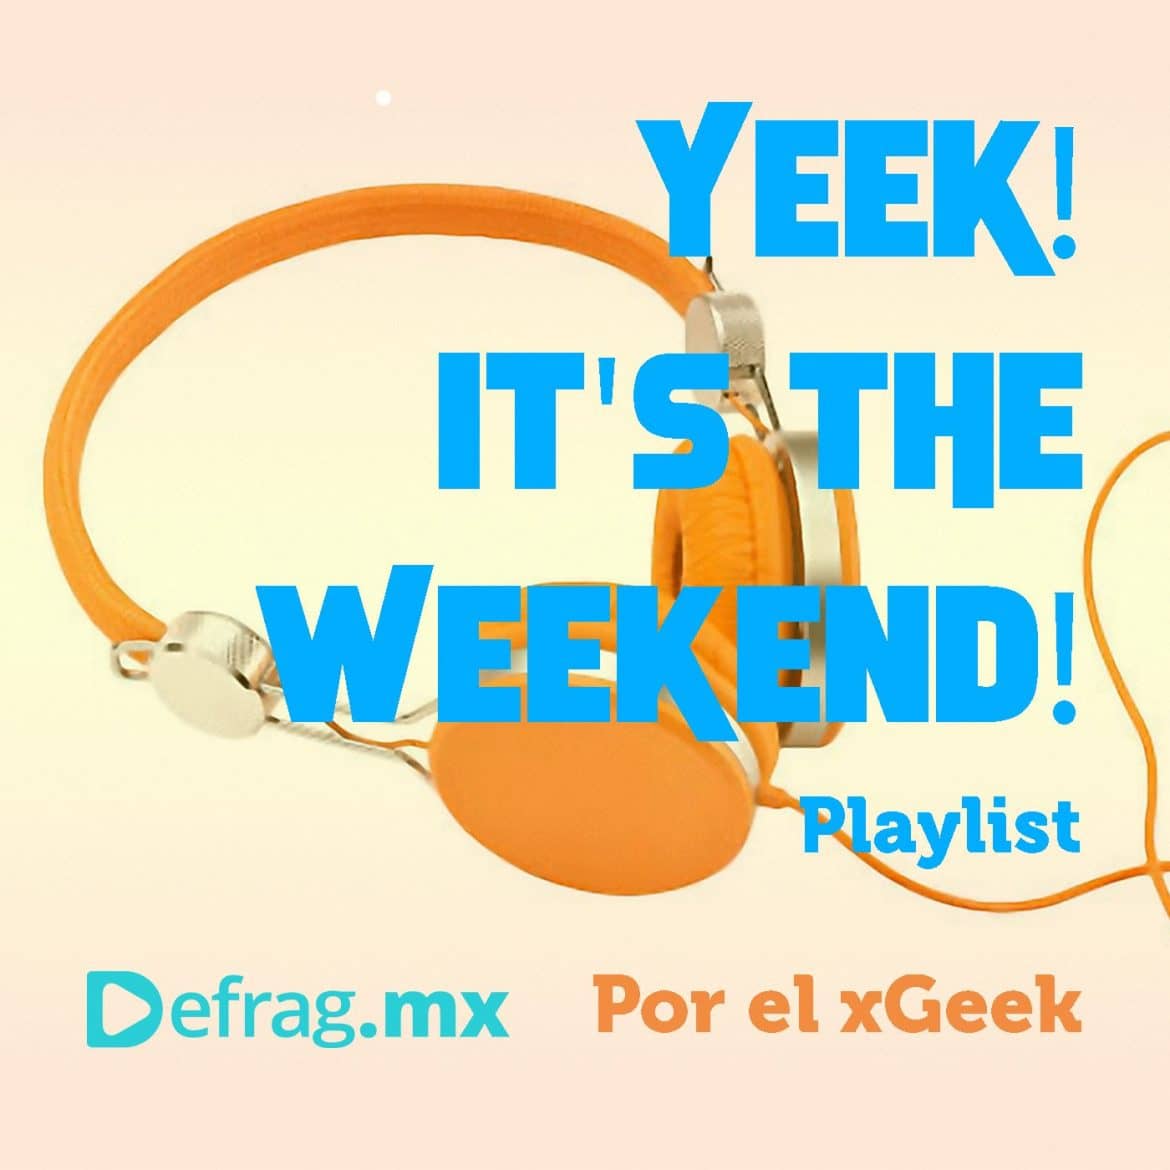 Yeek! It's The Weekend! Playlist Mar 11 2022